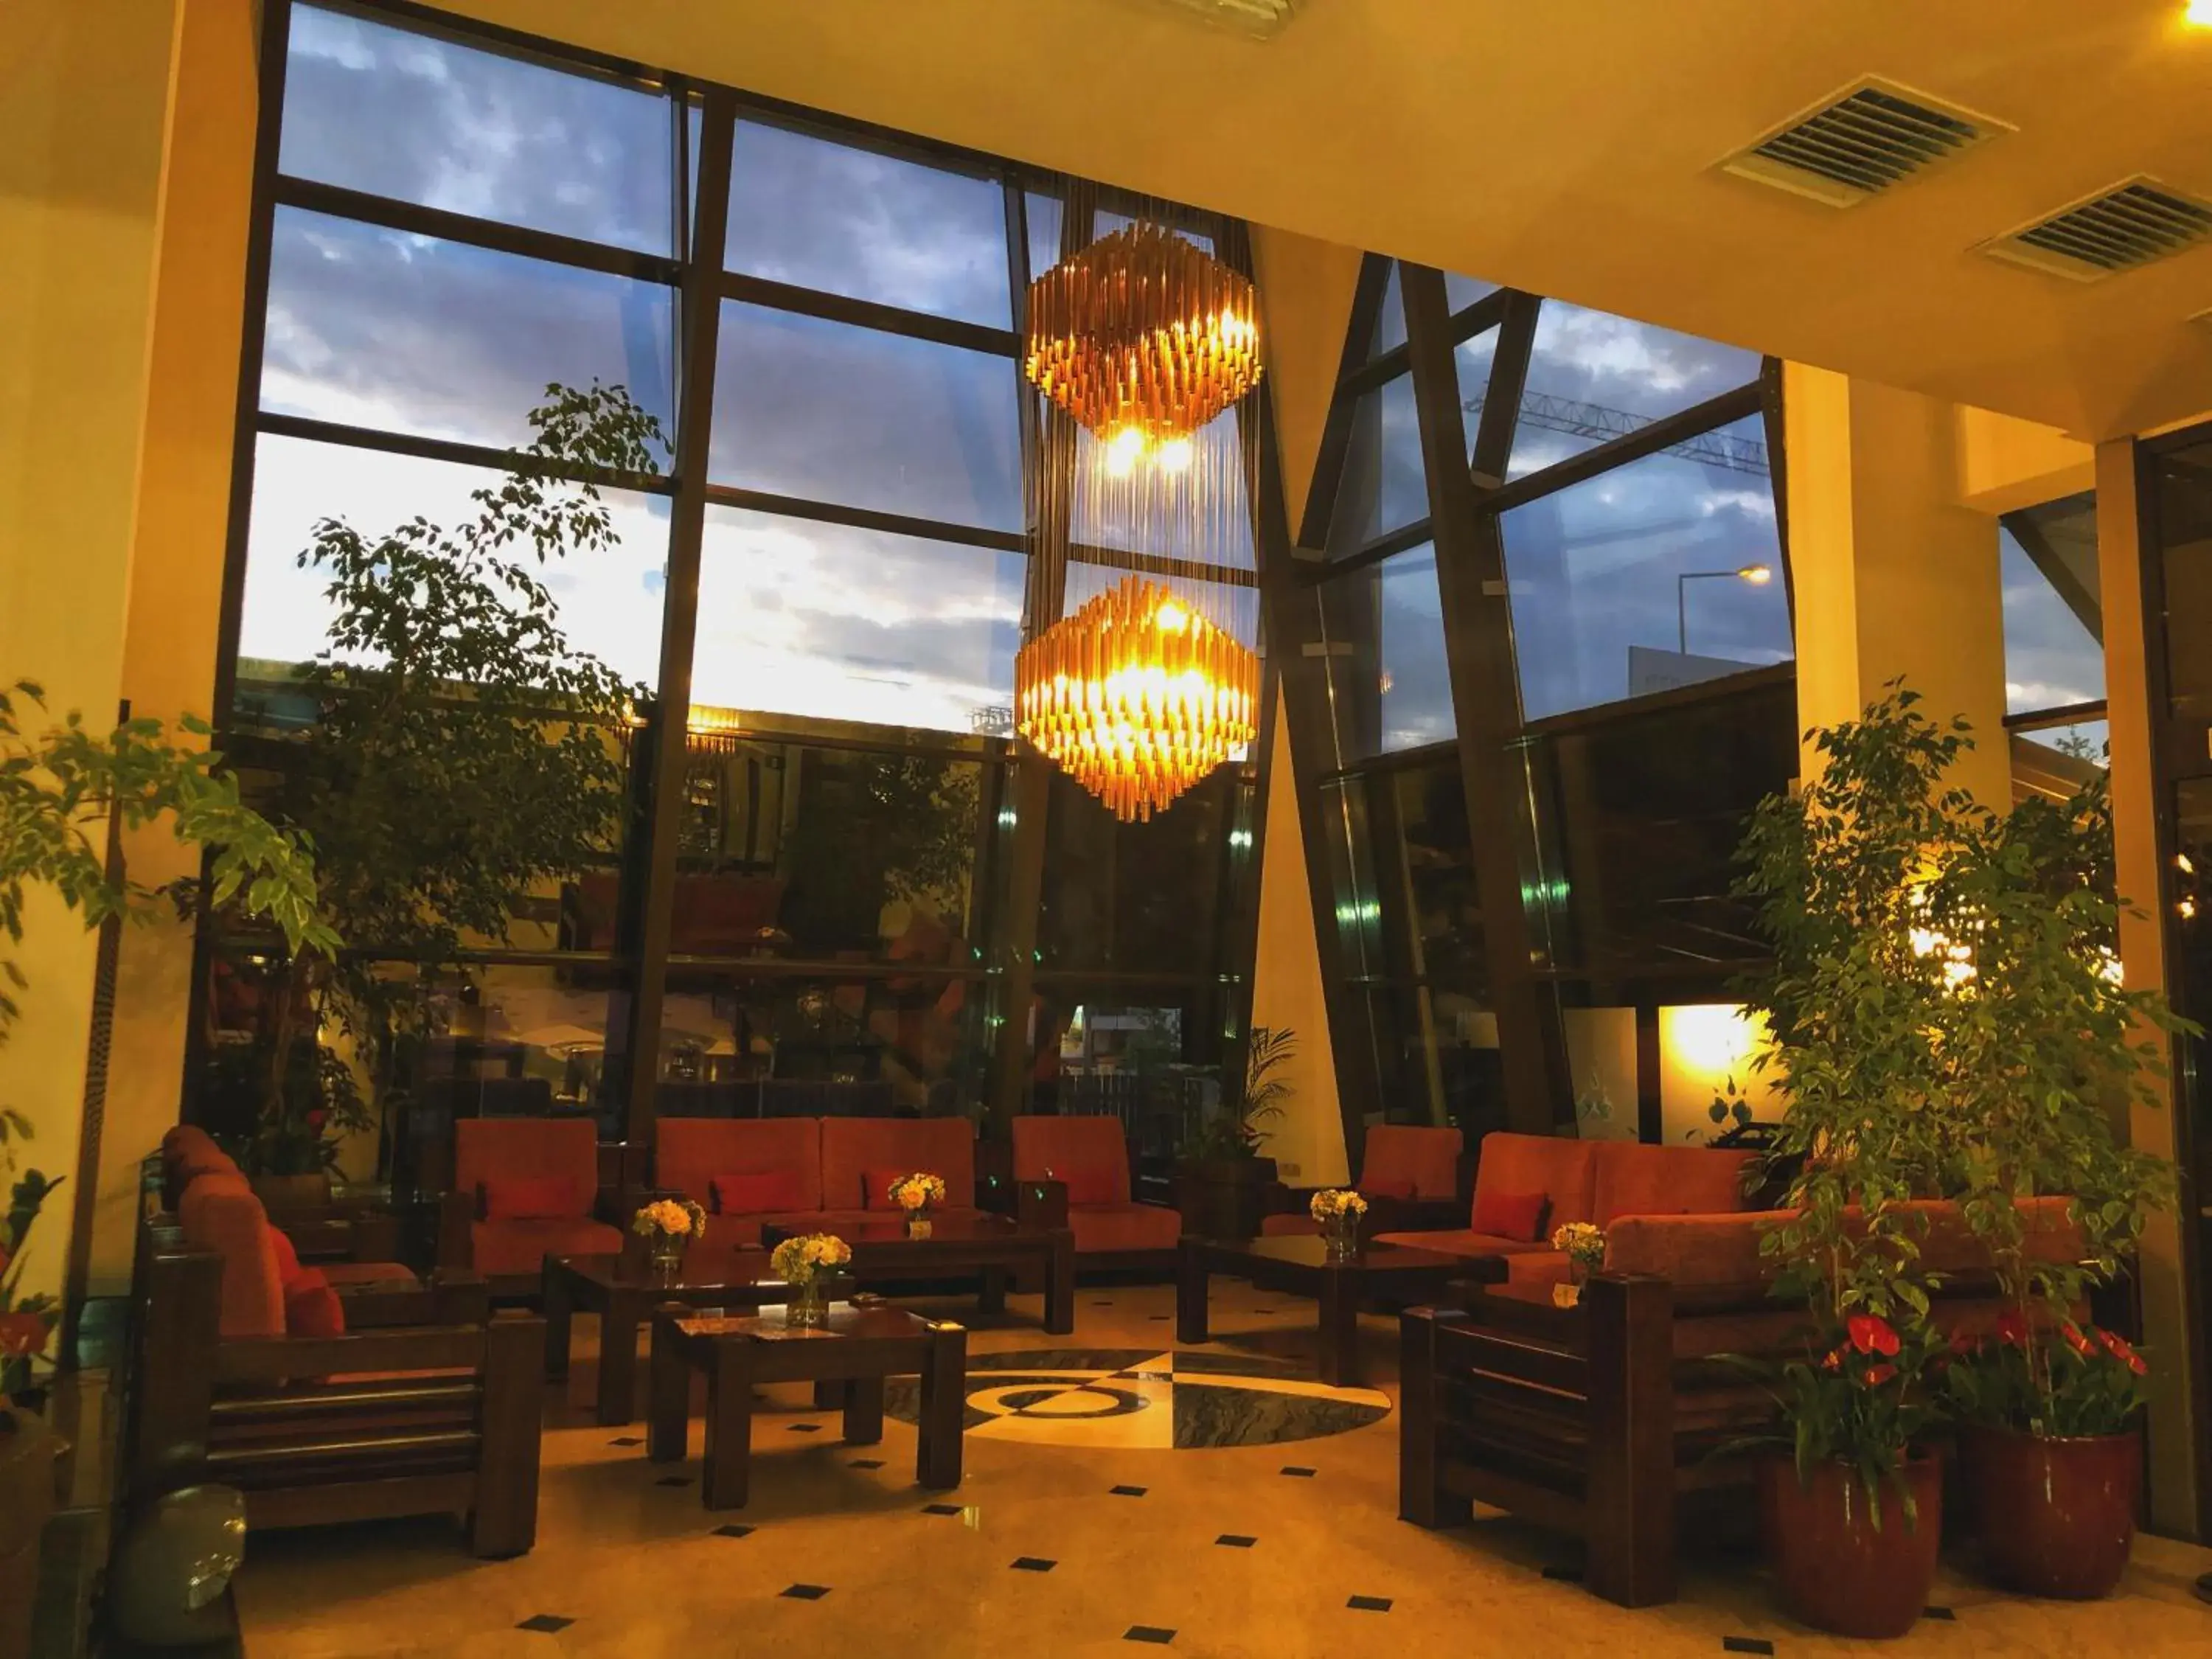 Lobby or reception in Hotel Tecadra